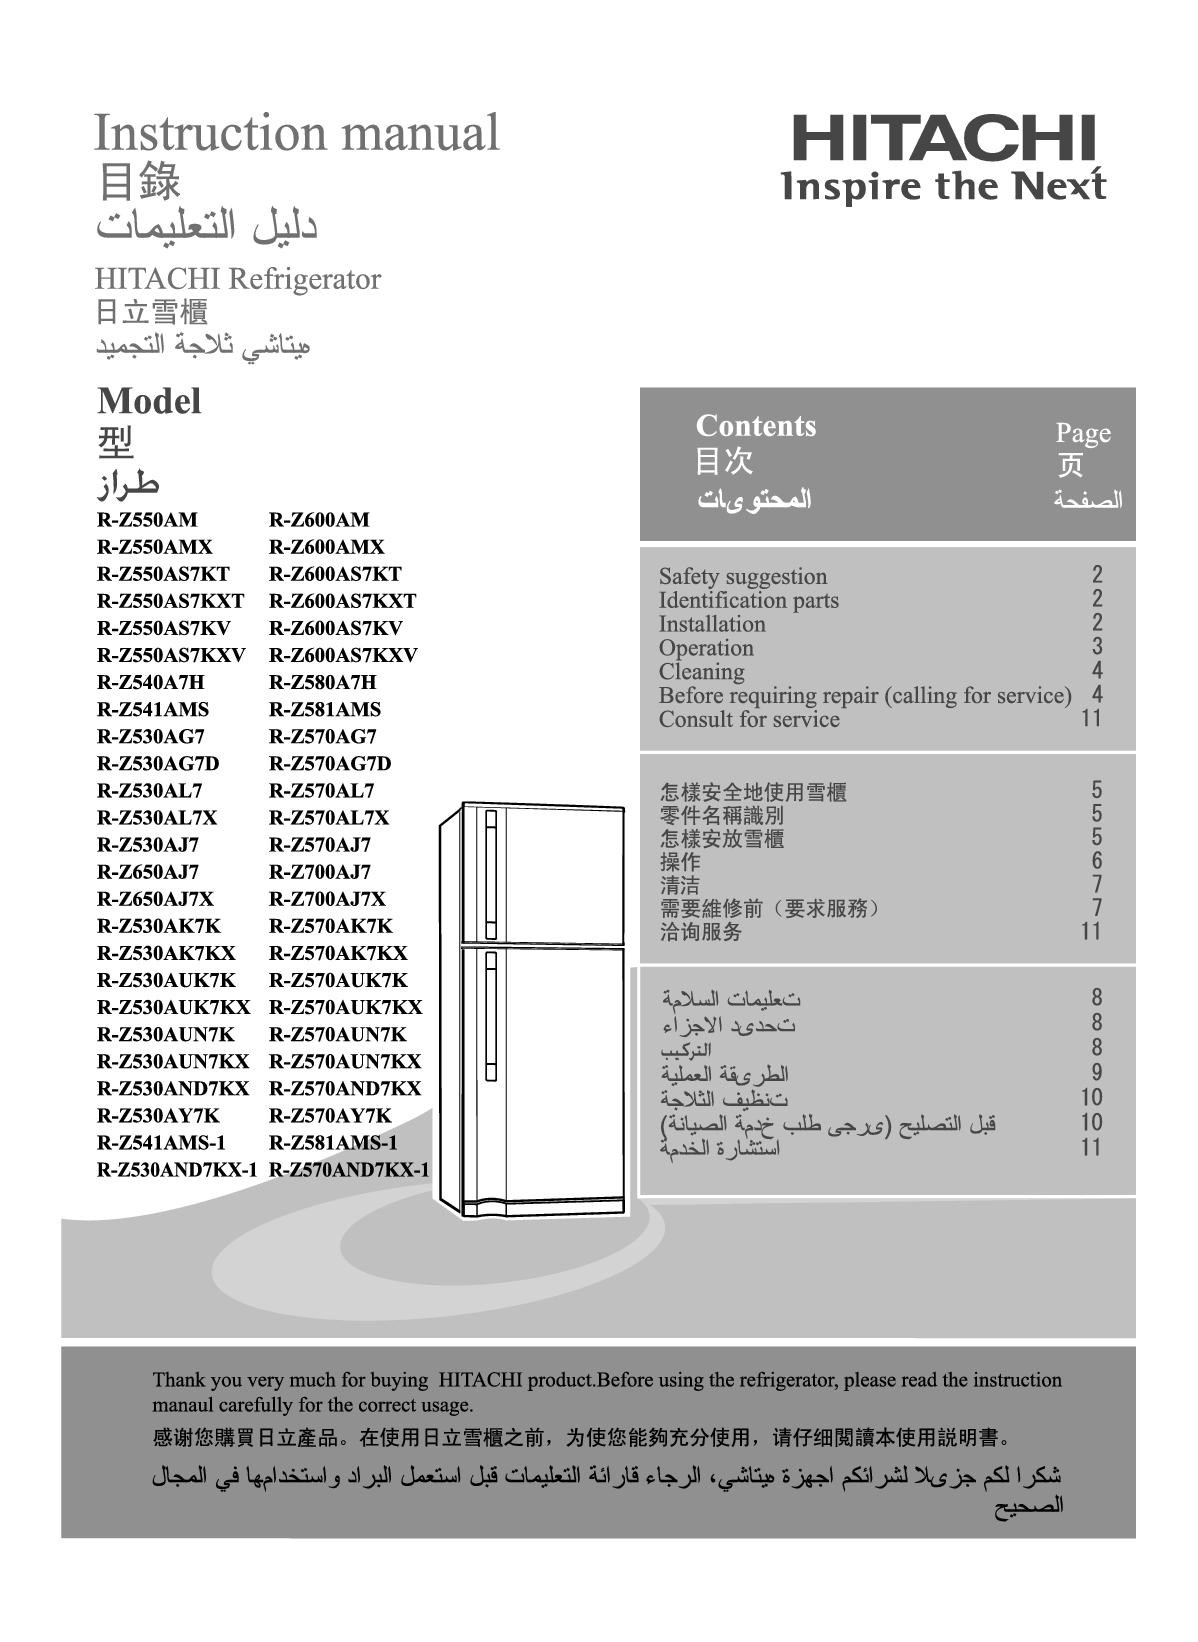 日立 Hitachi R-Z530AG7, R-Z541AMS, R-Z570AND7KX-1, R-Z600AM 使用说明书 封面